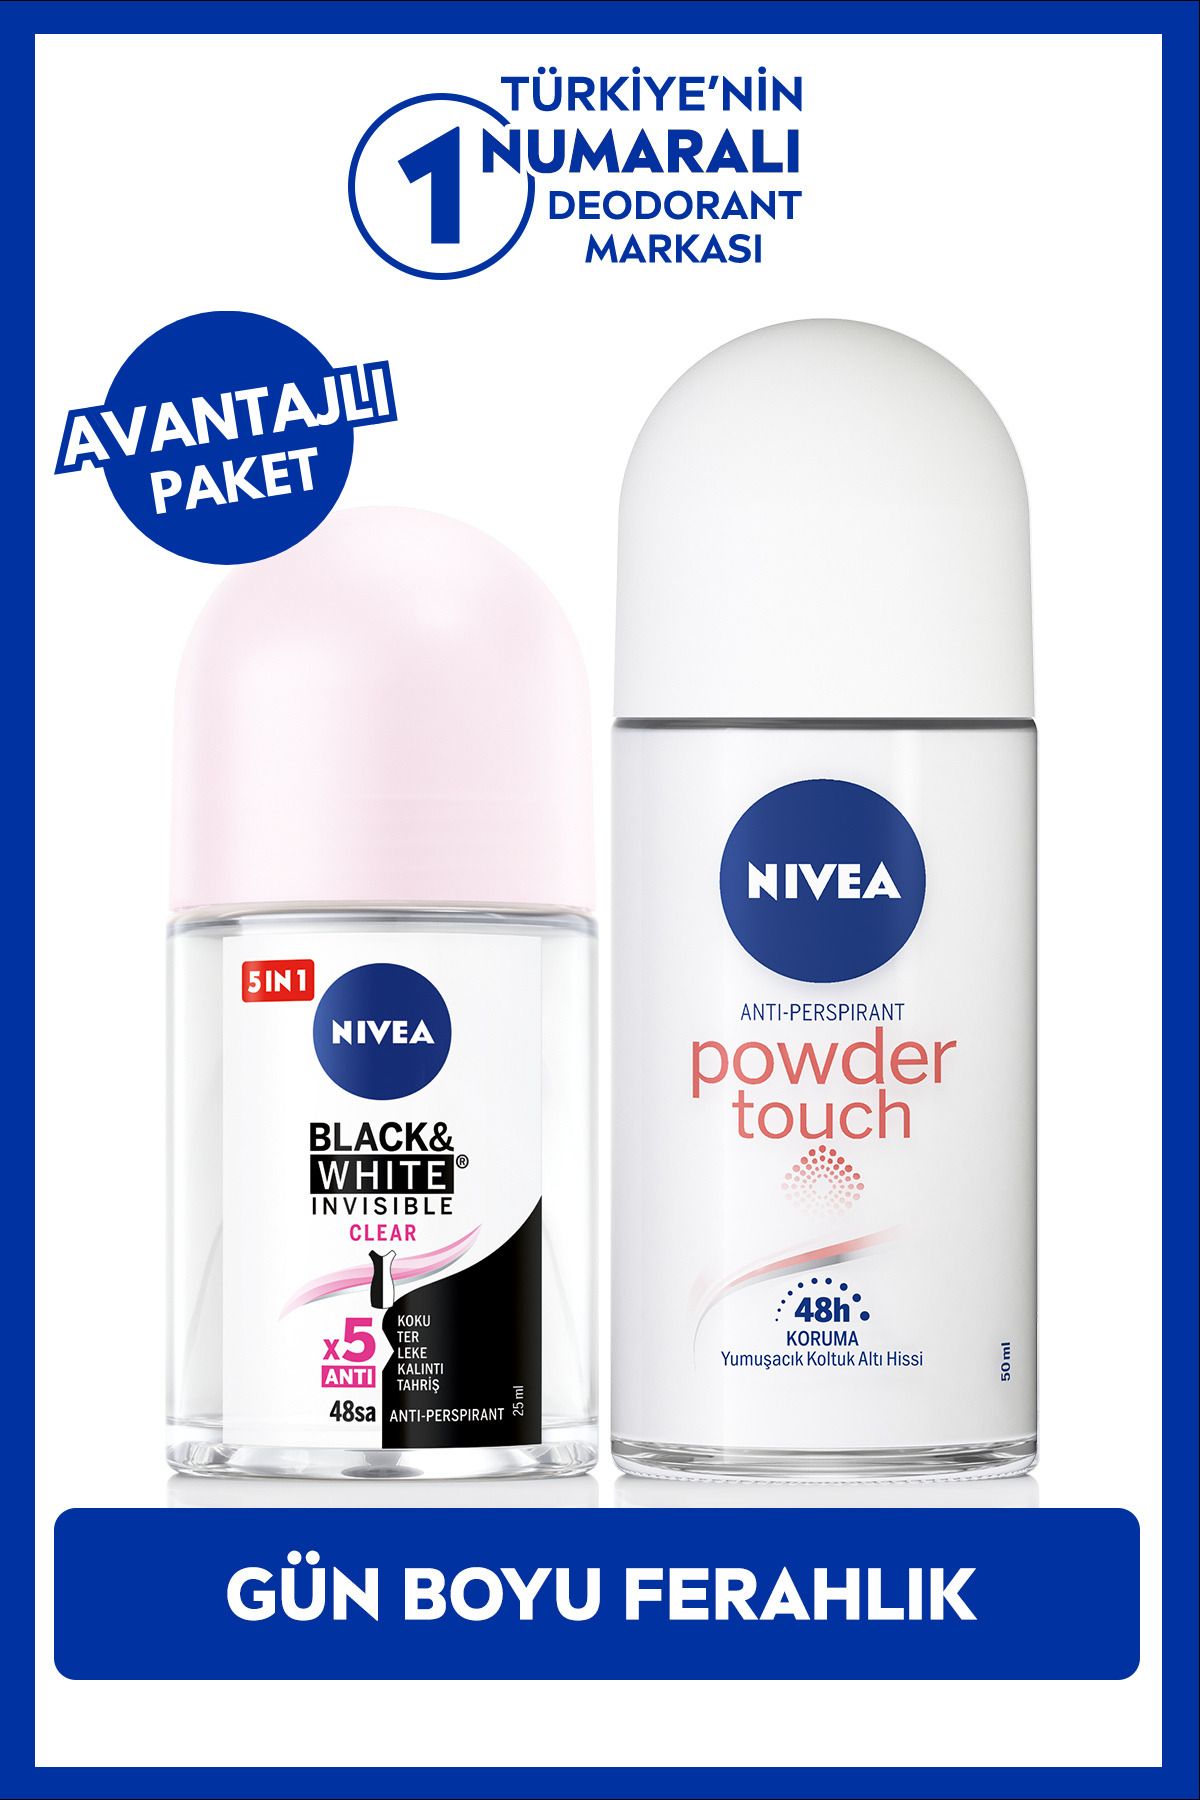 NIVEA Kadın Roll-on Deodorant Powder Touch 50ml ve Mini Roll-on Black&WhiteClear 25ml, Bakımlı Koltuk Altı